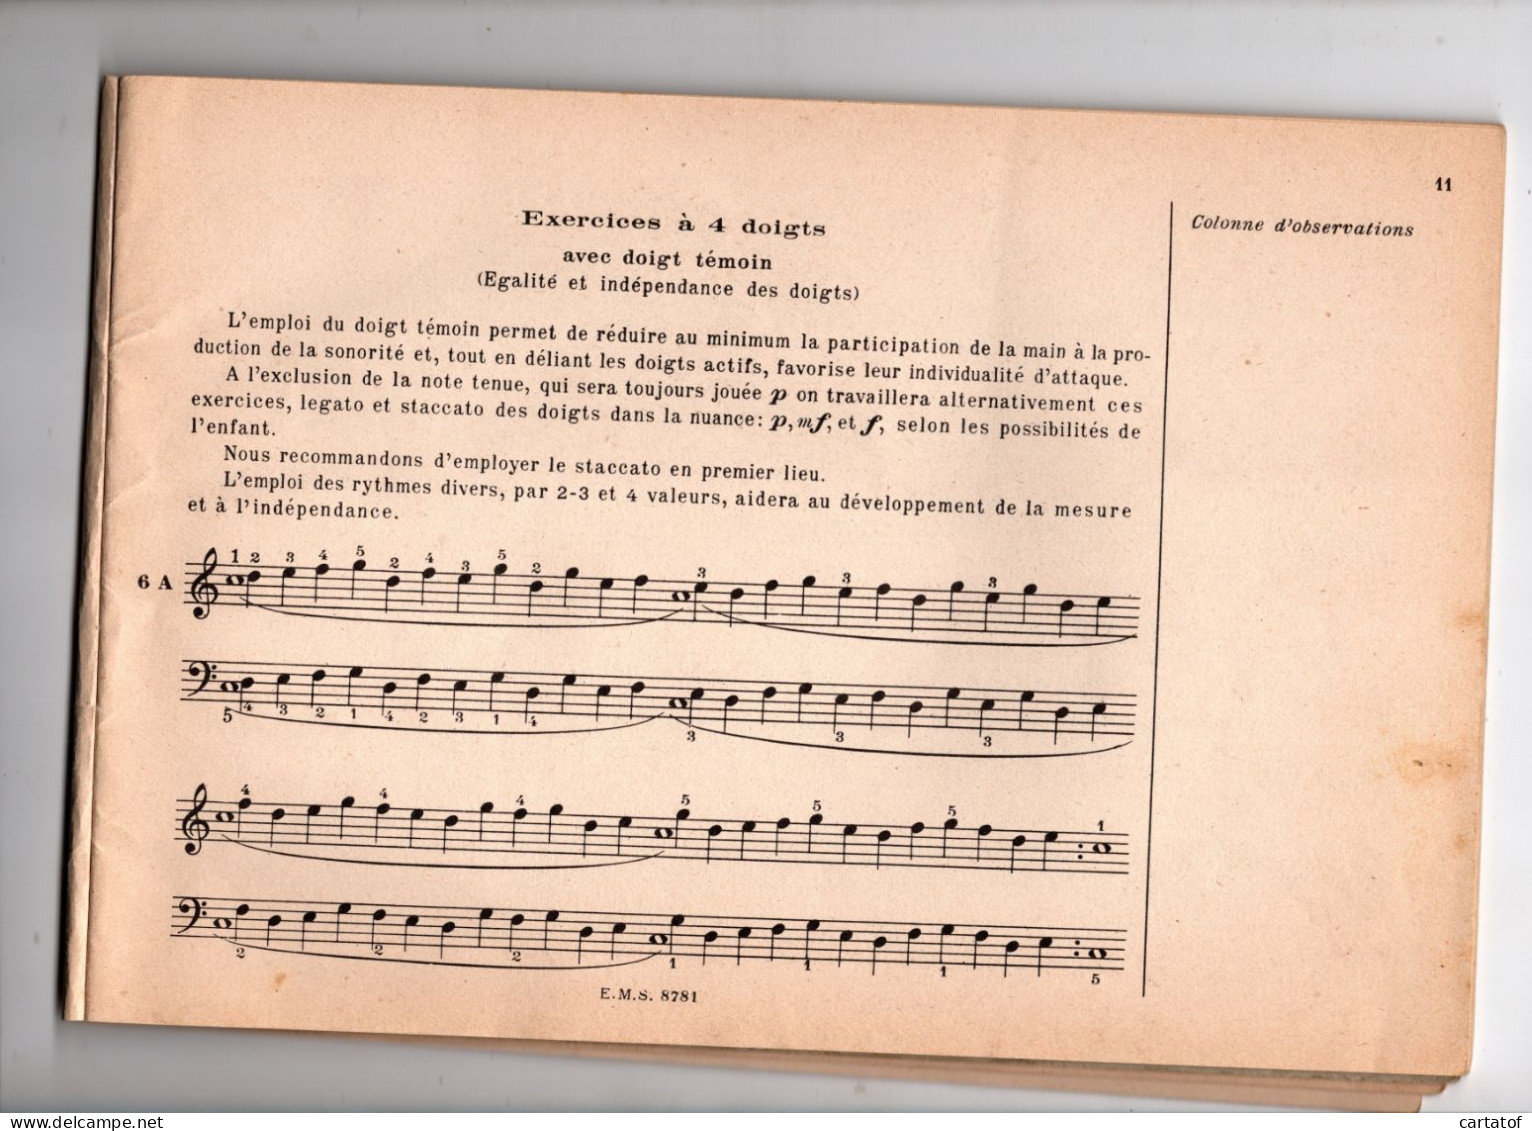 Principes Elémentaires De La Technique Pianistique . ALFRED CORTOT . JEANNE BLANCARD . Editions SALABERT - Music